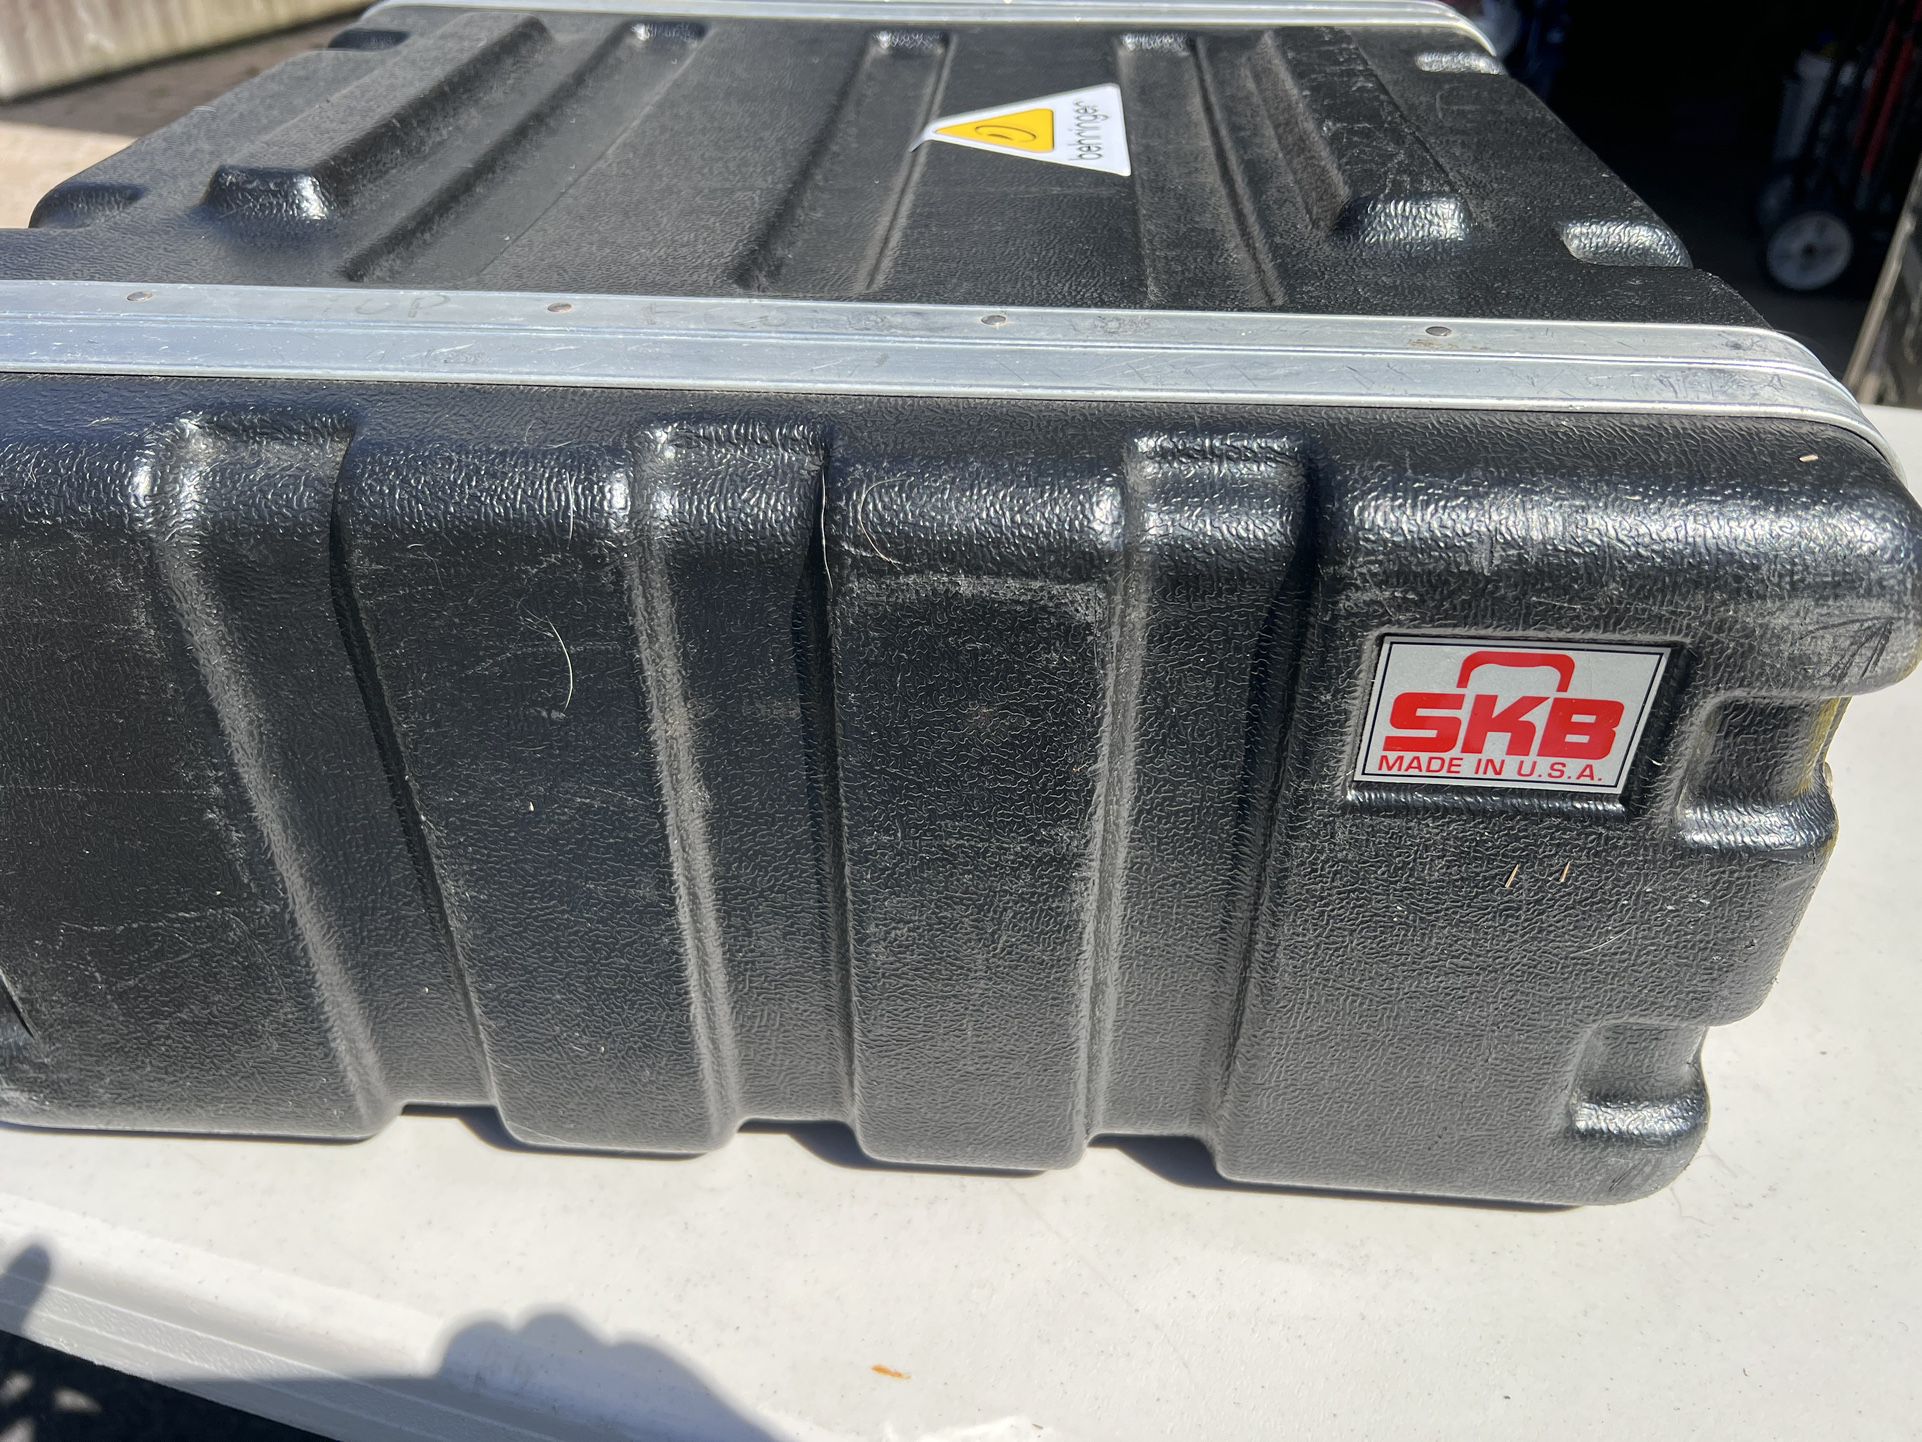 Audio Equipment In SKB Travel Case